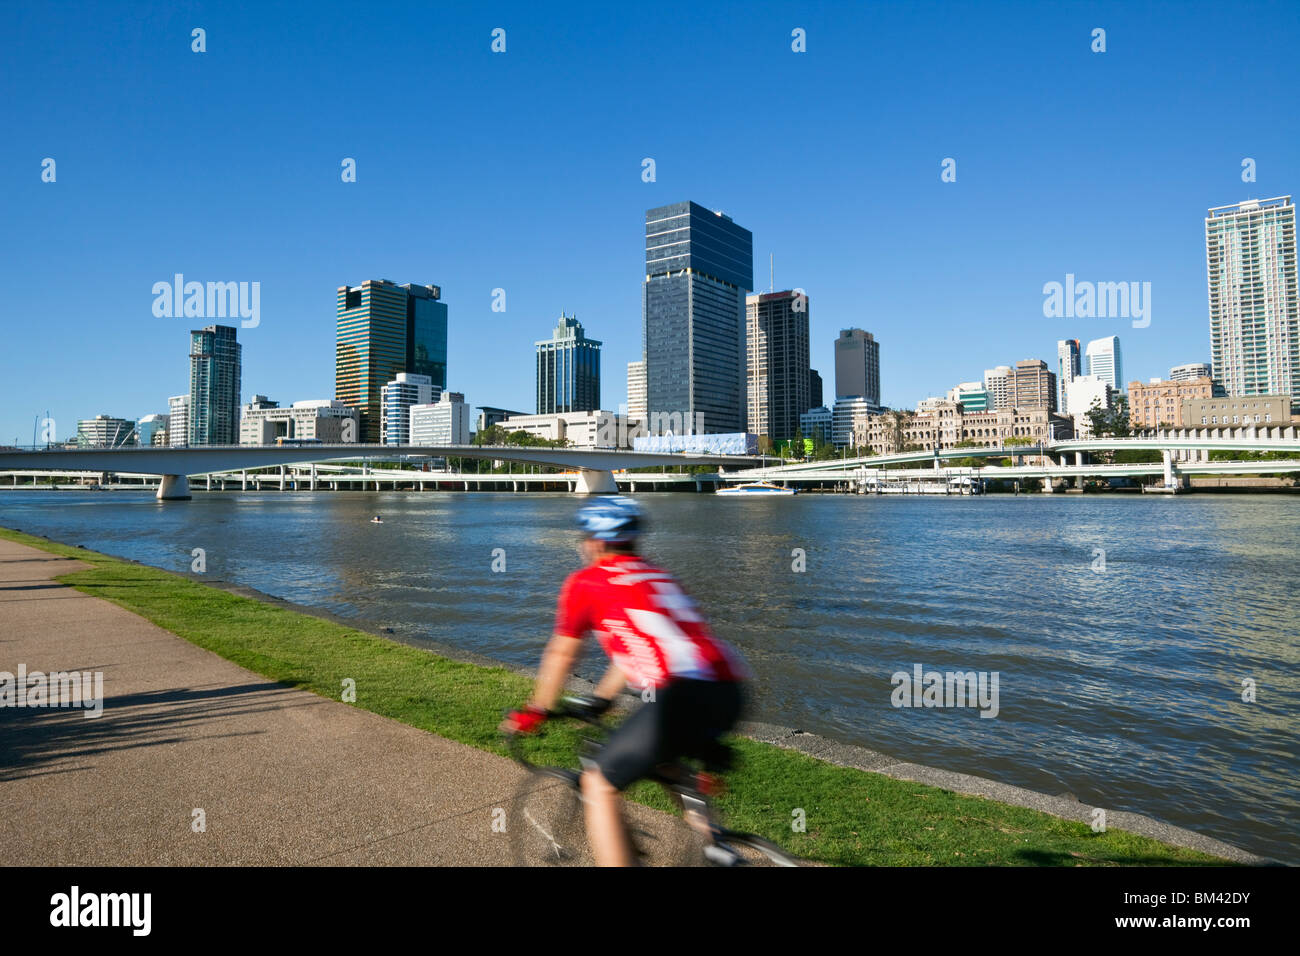 Ciclista sul lungofiume al South Bank con lo skyline della città in background. South Bank, Brisbane, Queensland, Australia Foto Stock